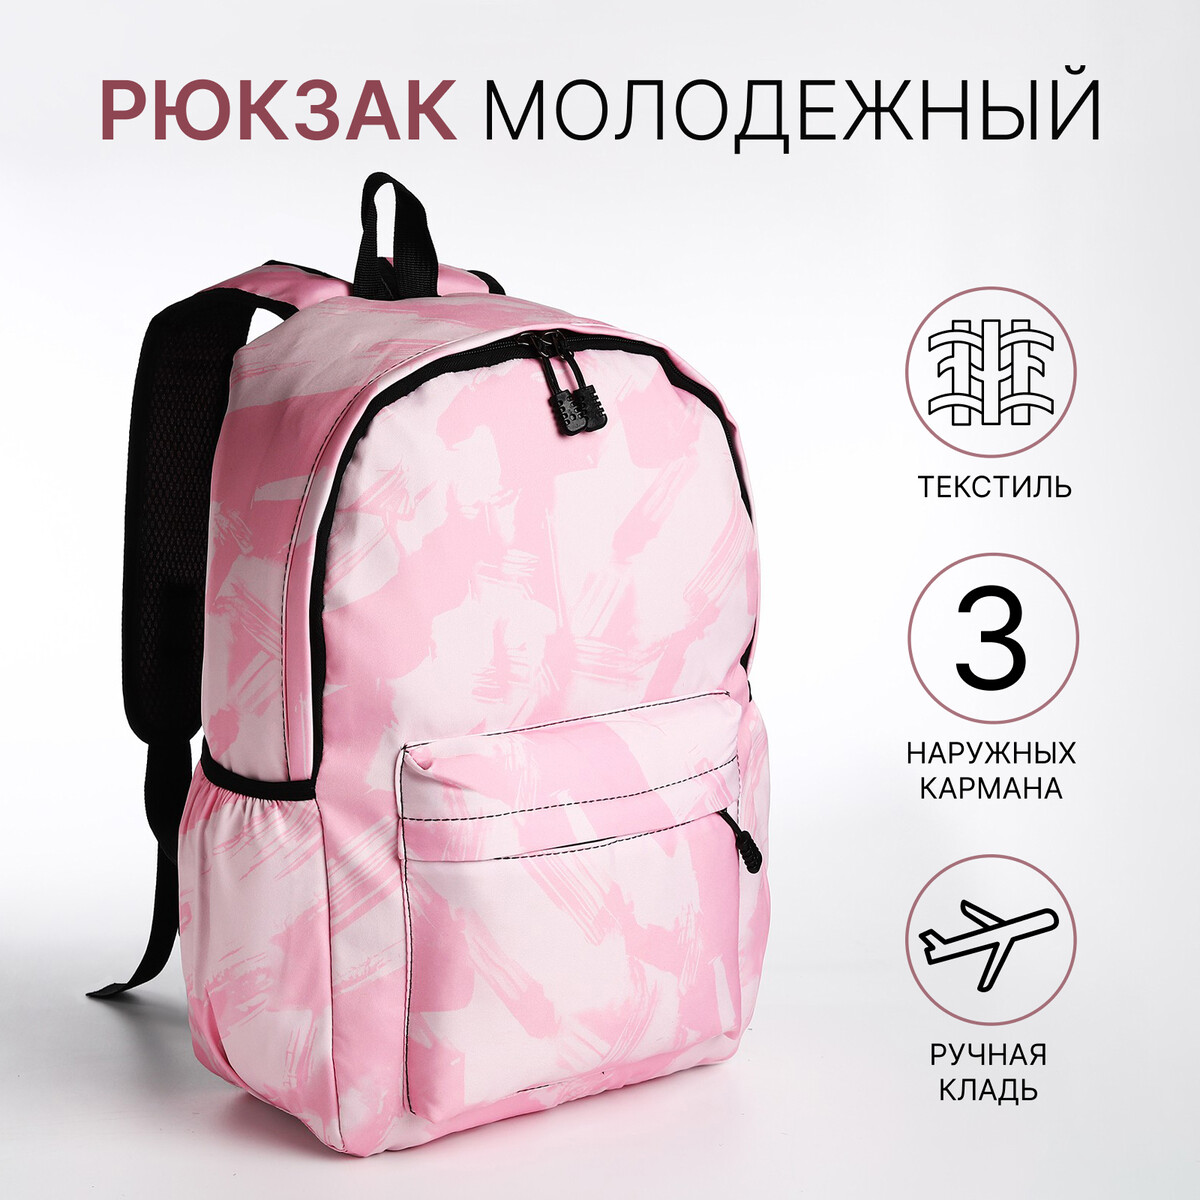 Рюкзак молодежный из текстиля на молнии, 3 кармана, цвет розовый